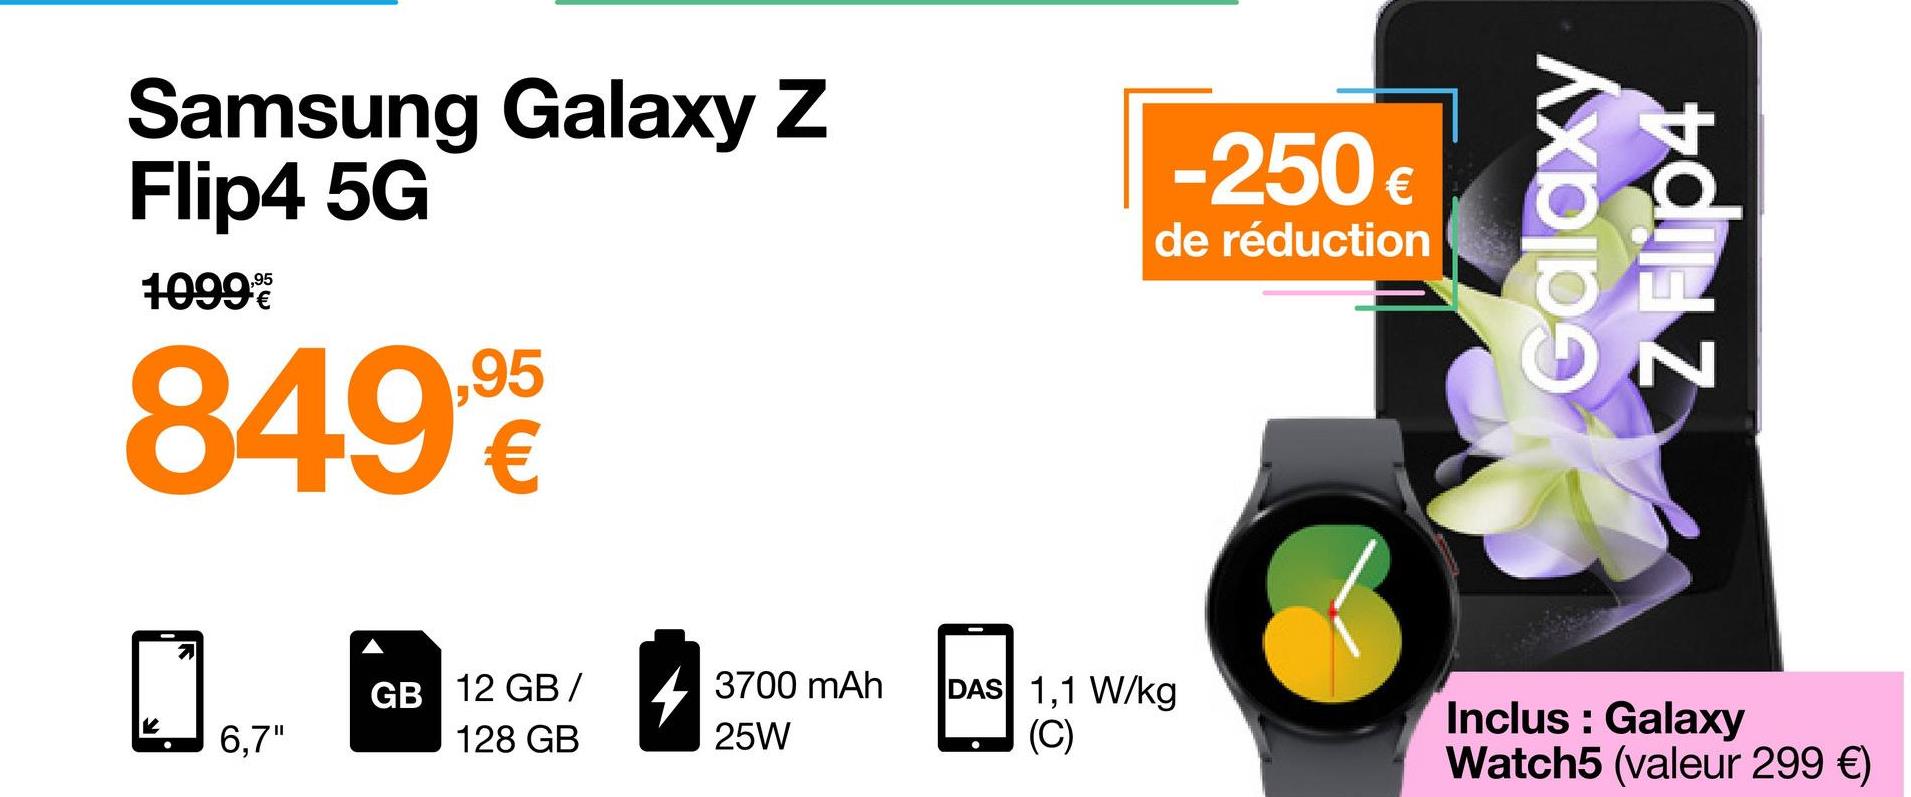 Samsung Galaxy Z
Flip4 5G
10999
8499€
7
6,7"
GB 12 GB/
128 GB
3700 mAh
25W
-250€
de réduction
DAS 1,1 W/kg
(C)
Galaxy
Inclus : Galaxy
Watch5 (valeur 299 €)